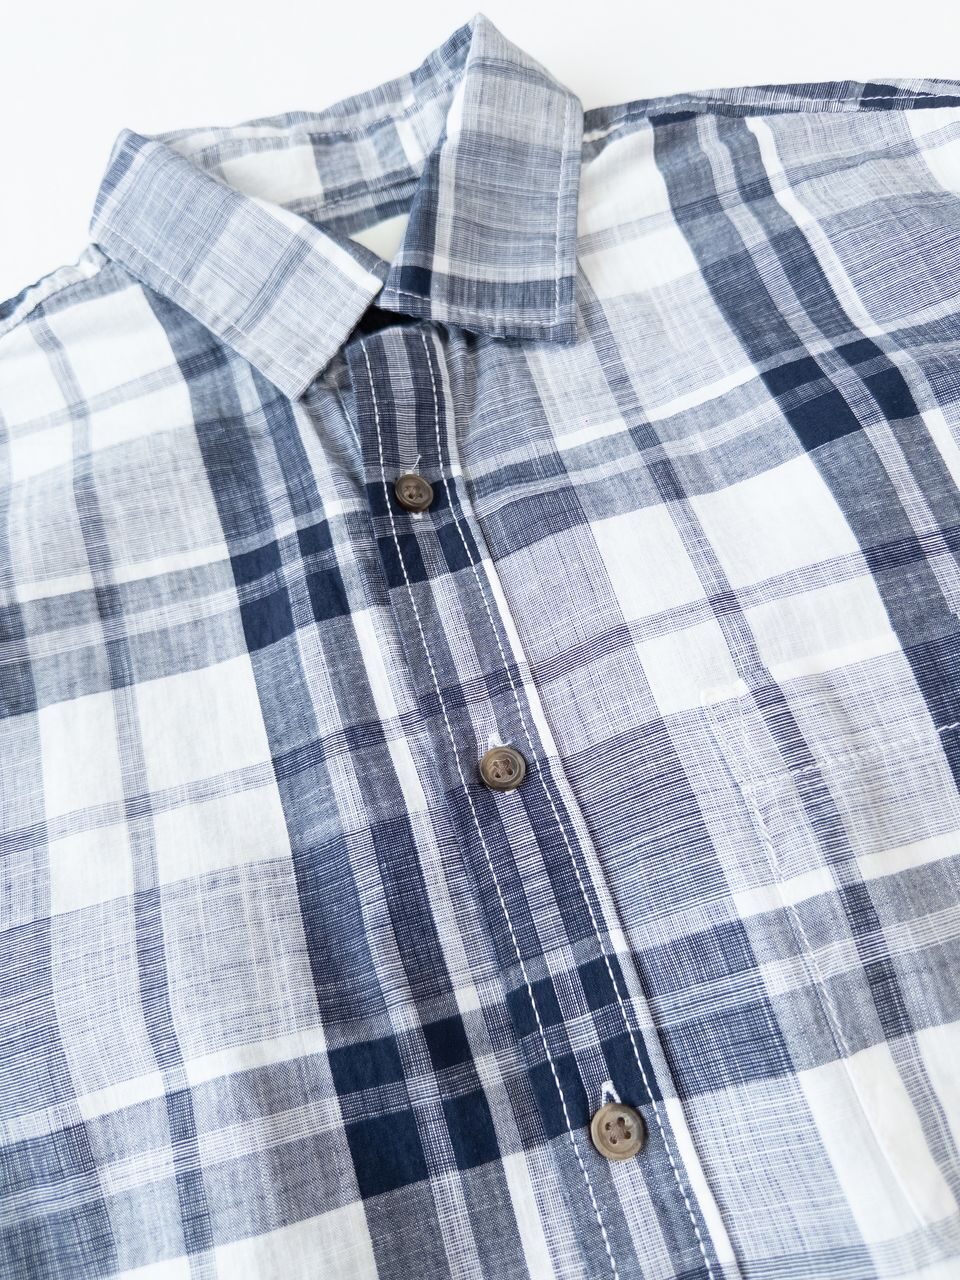 Легкая хлопковая мужская рубашка цвет серый/клетка размер EUR S (rus 46) C&A